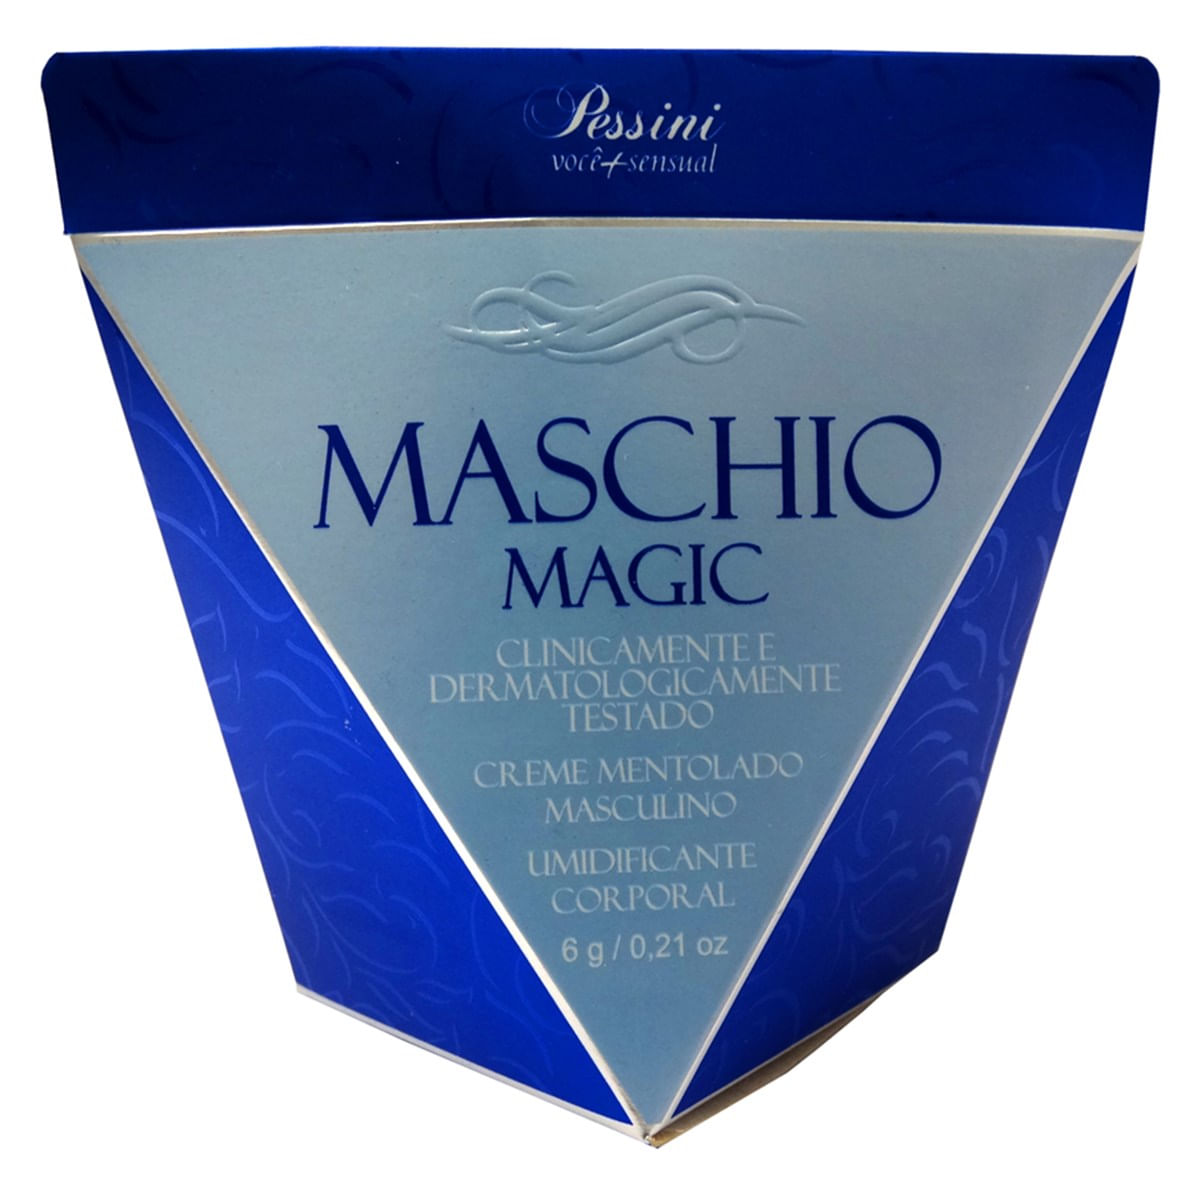 Maschio Magic Creme Pessini 6g Pessini